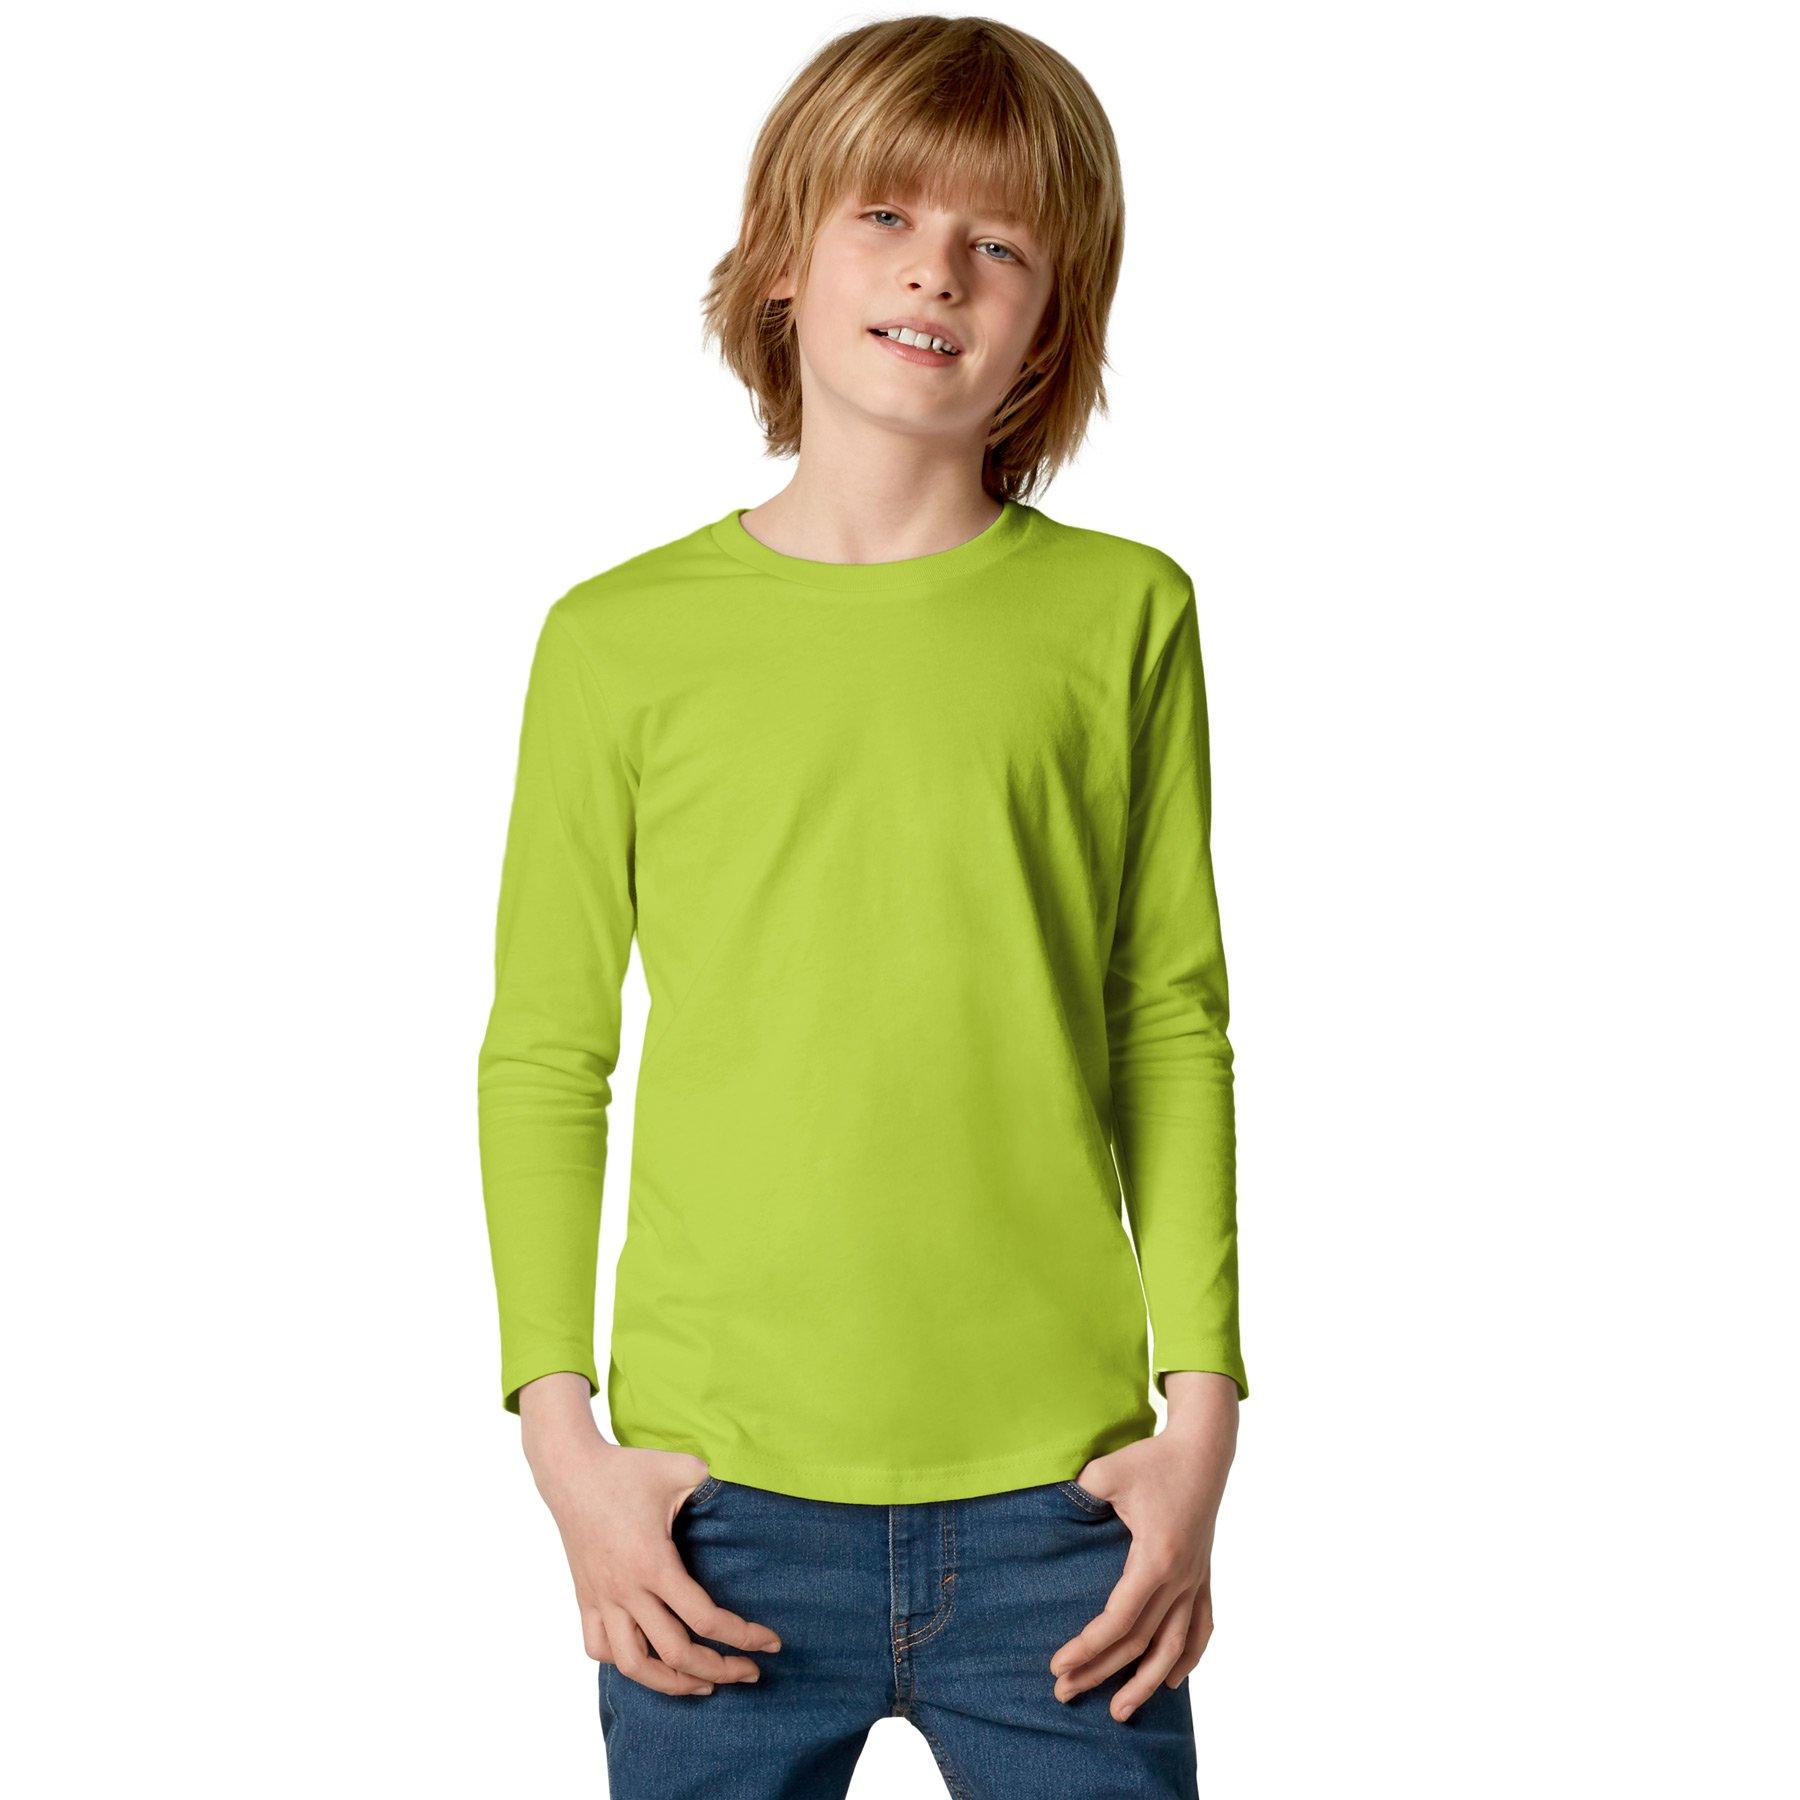 Langarm-shirt Kinder Jungen Hellgrün 152 von Tectake